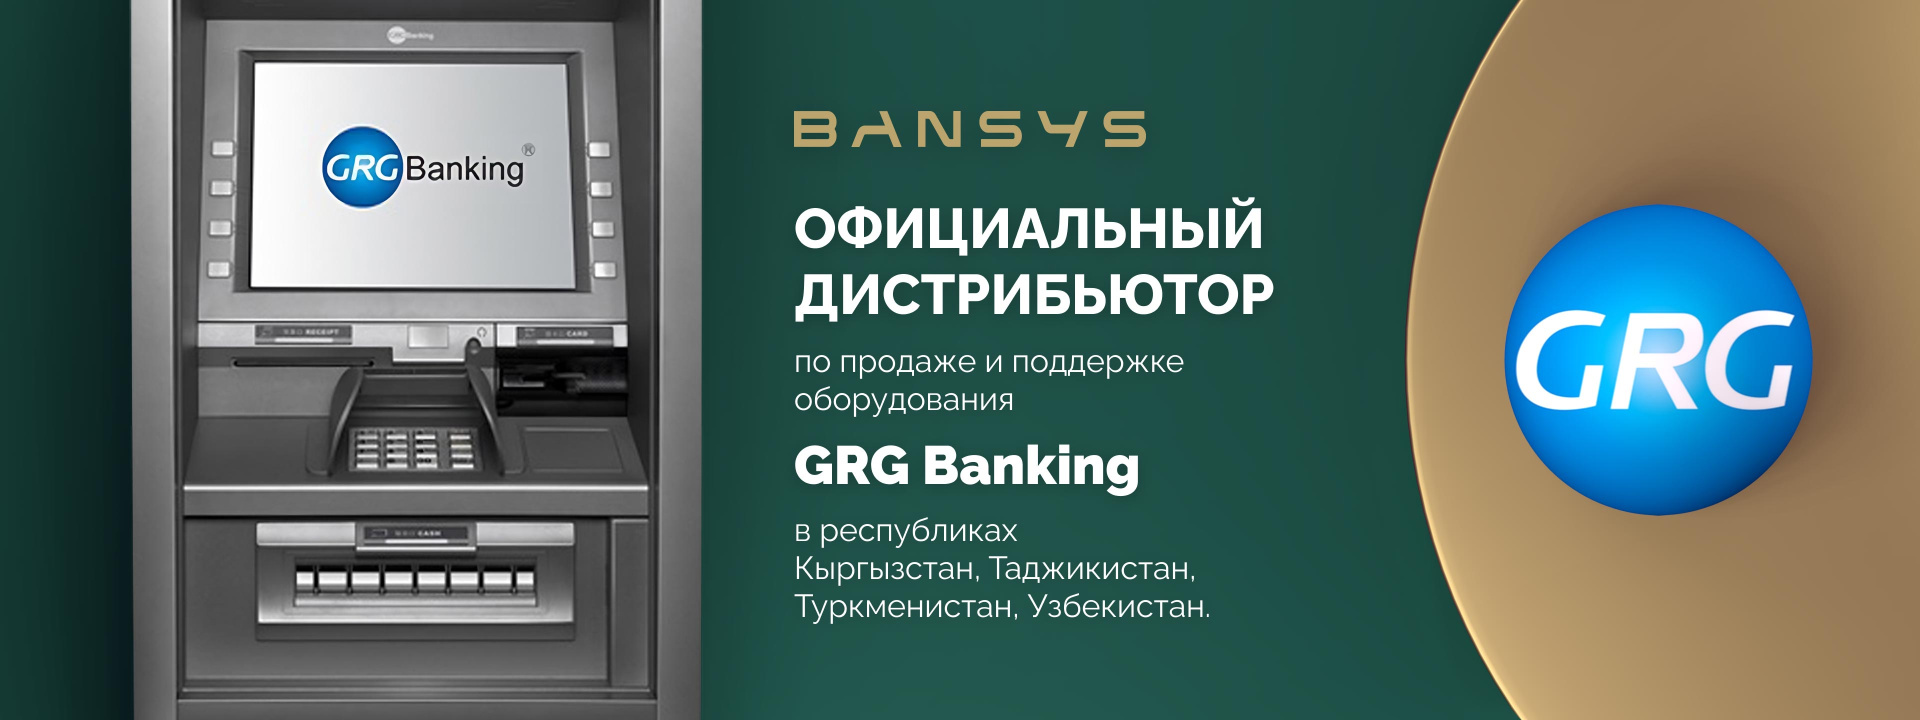 GRG banking